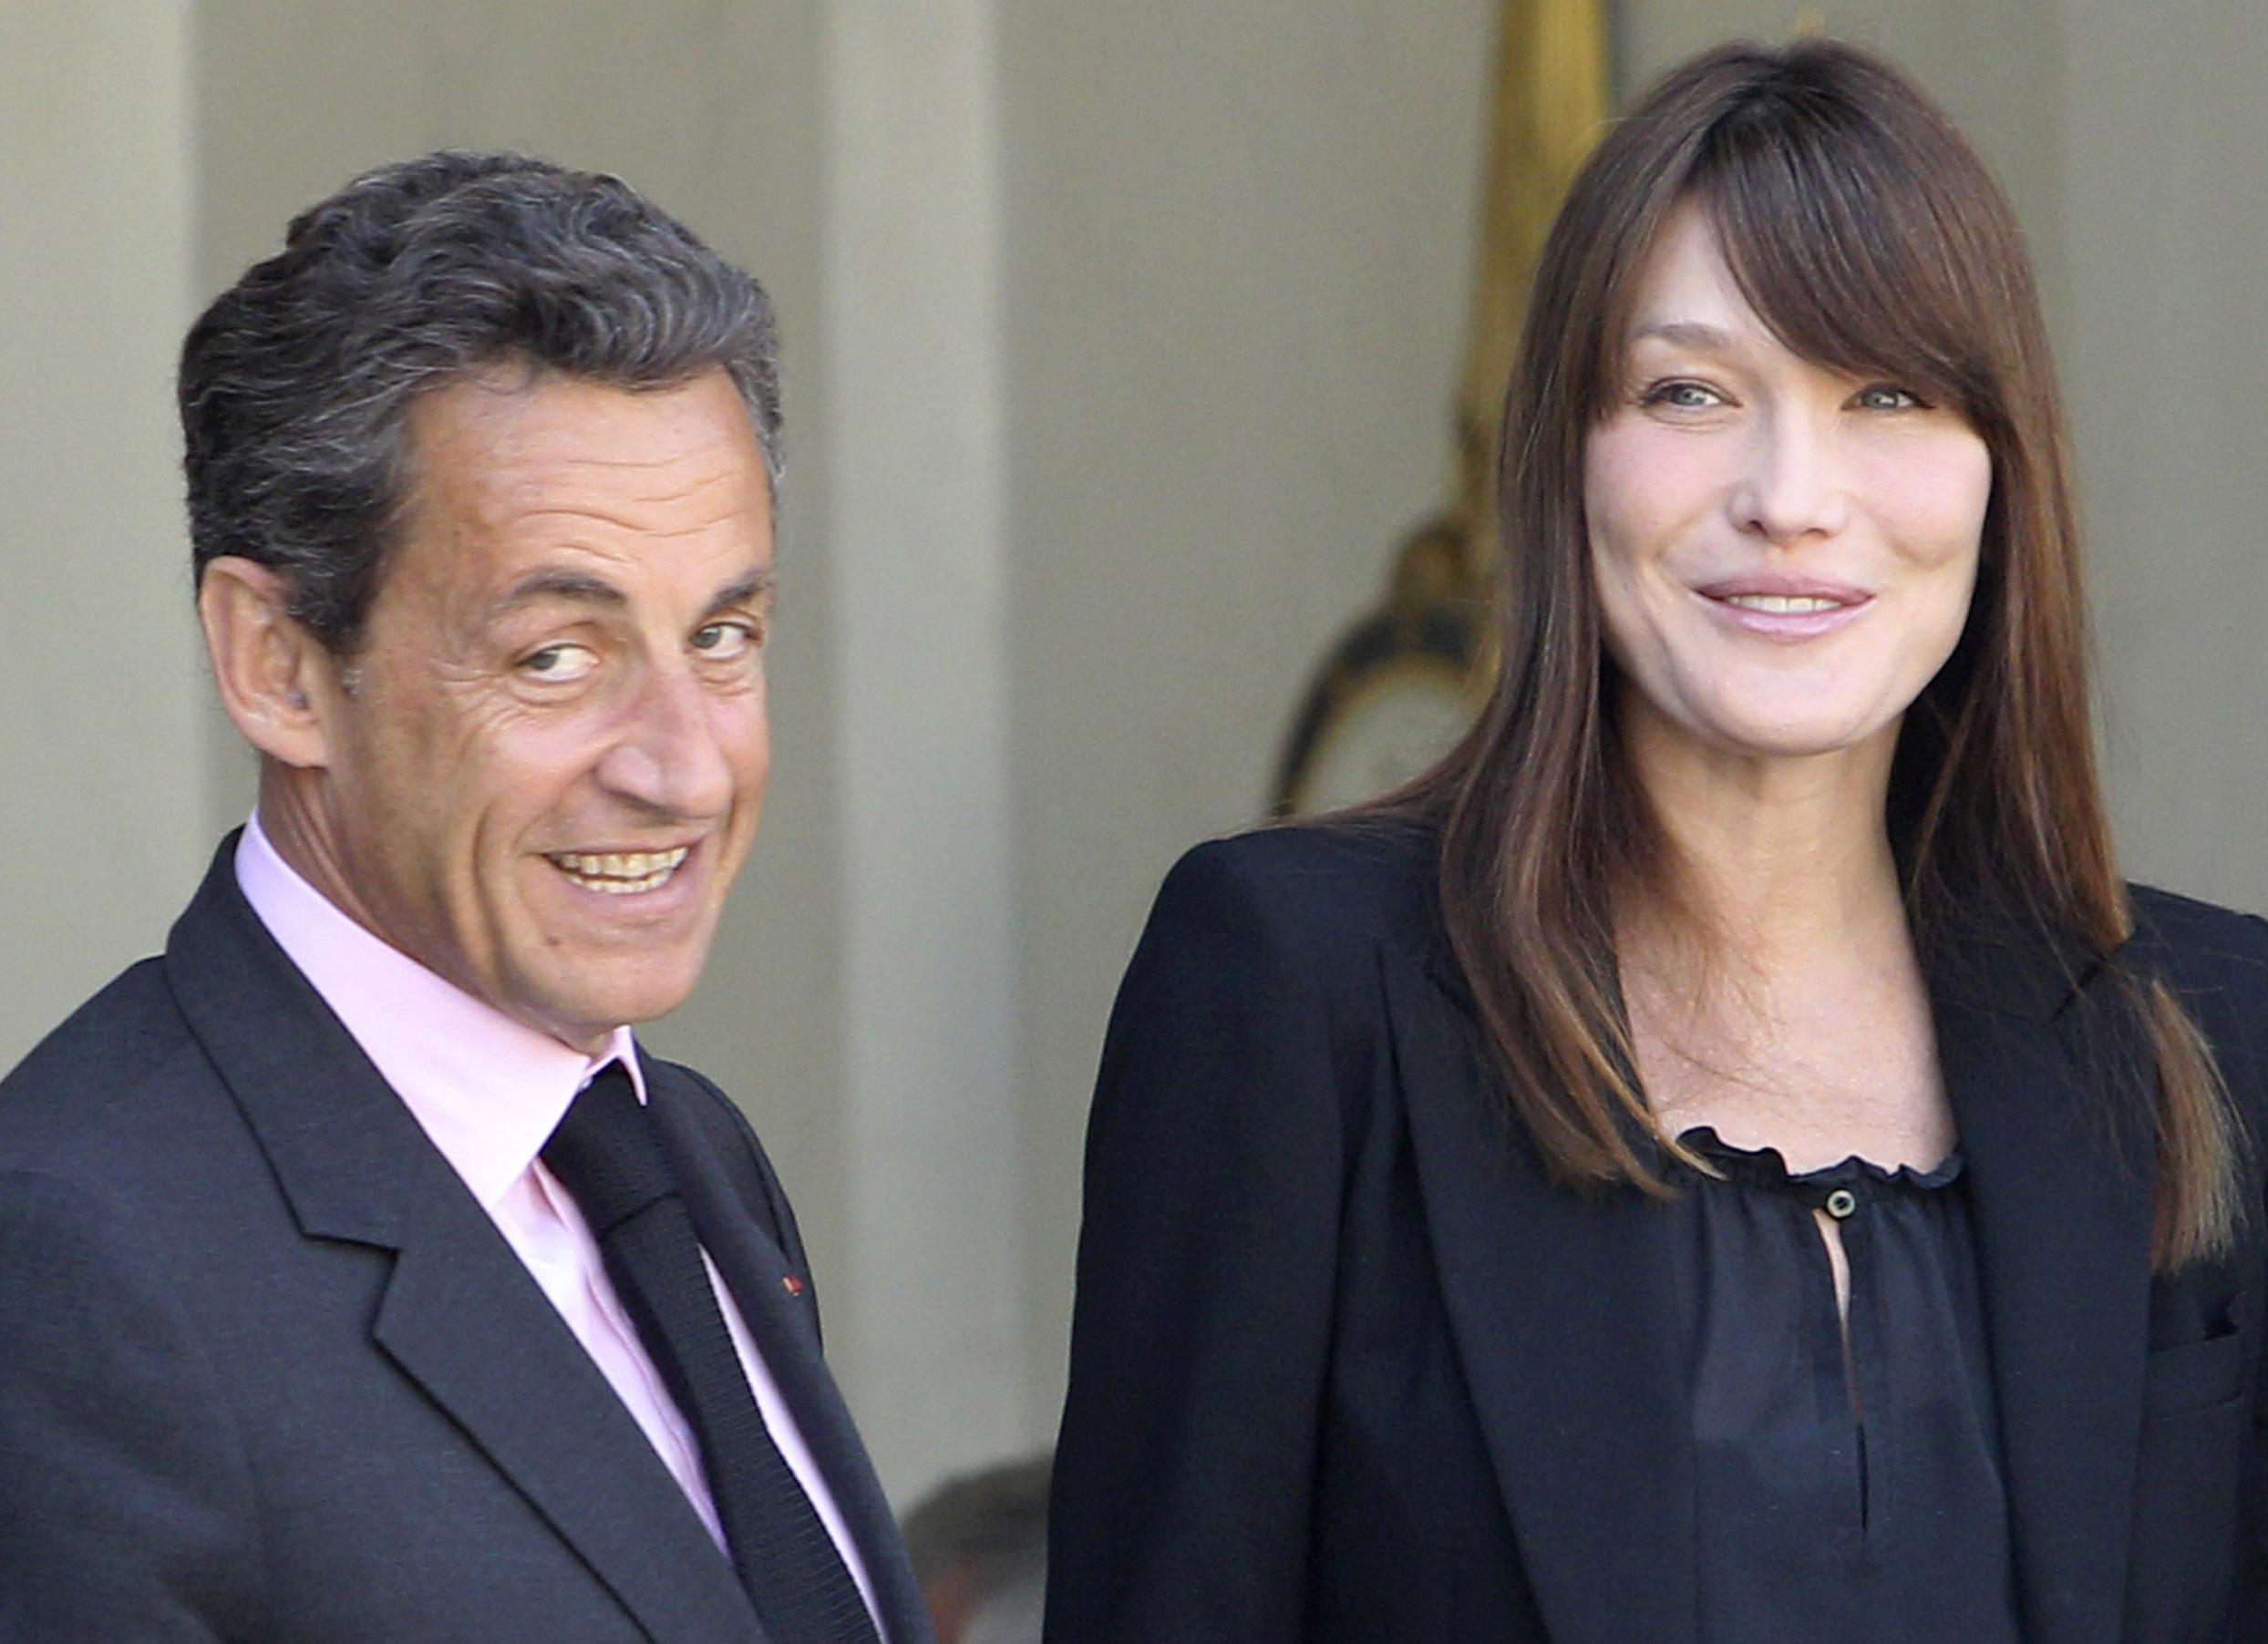 Bruni-Sarkozy anuncia el nombre de su hija: Giulia